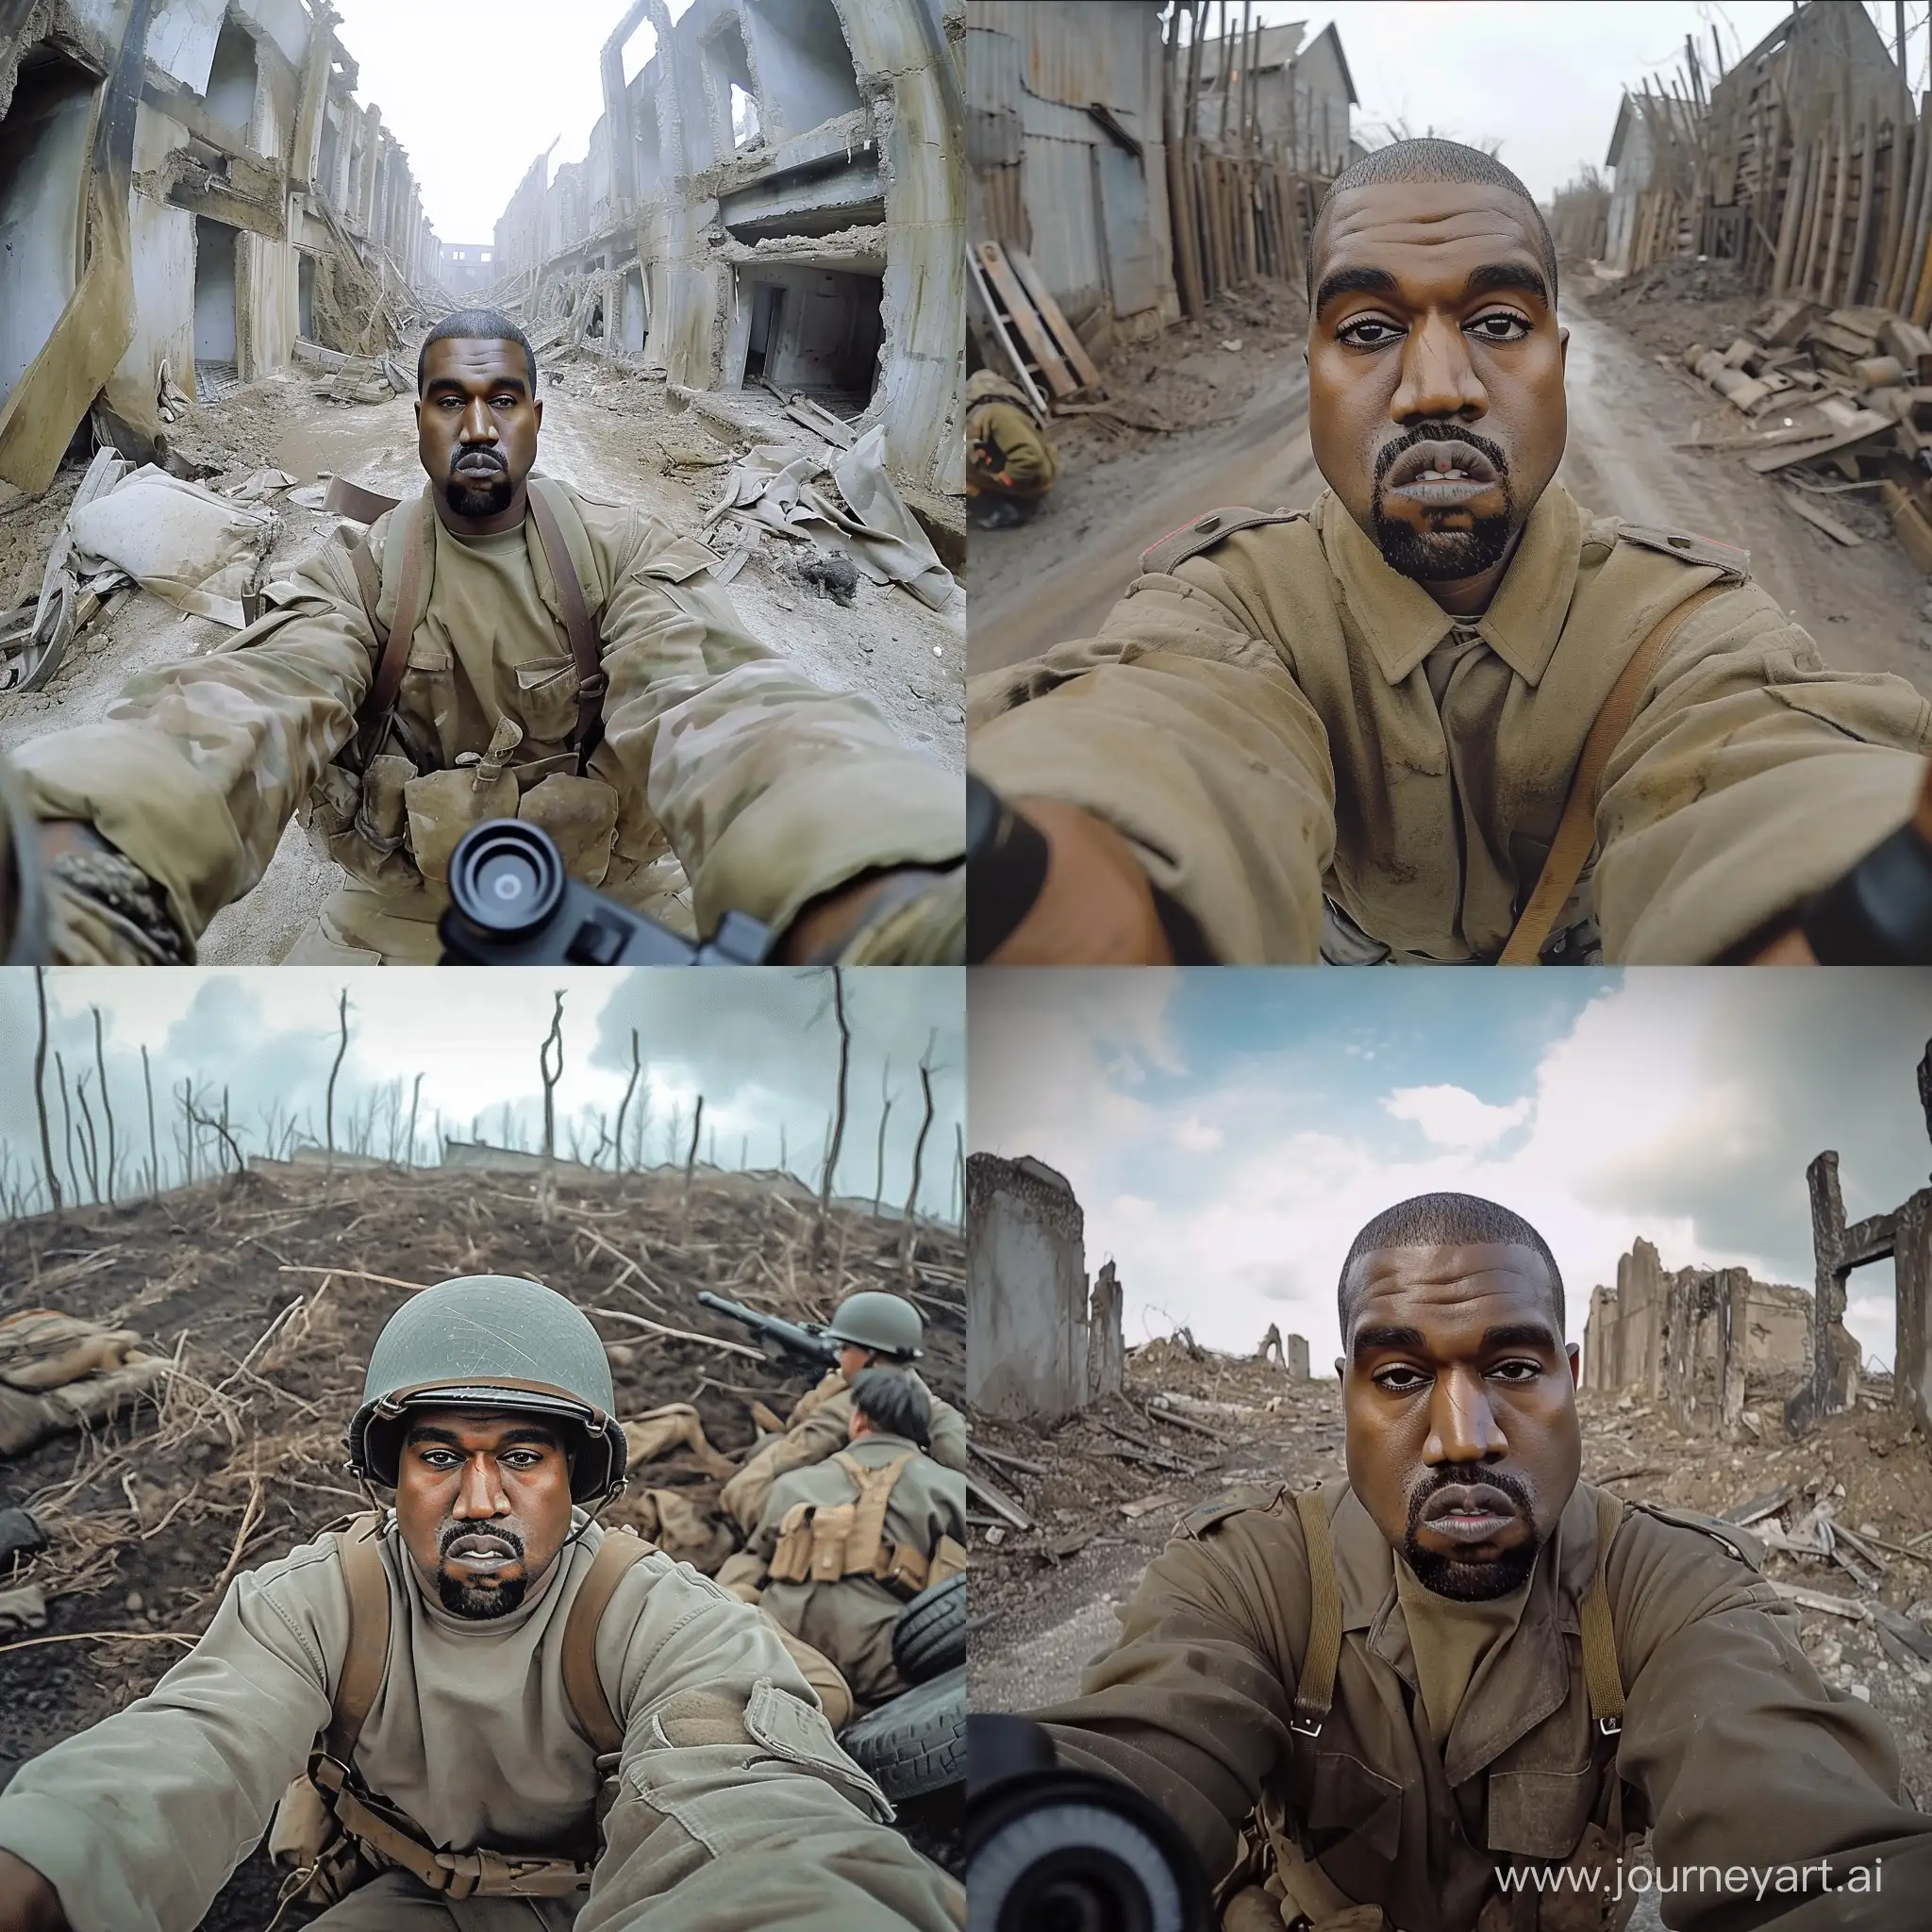 Gopro pov selfie of kanye west in world war 2 --v 6

